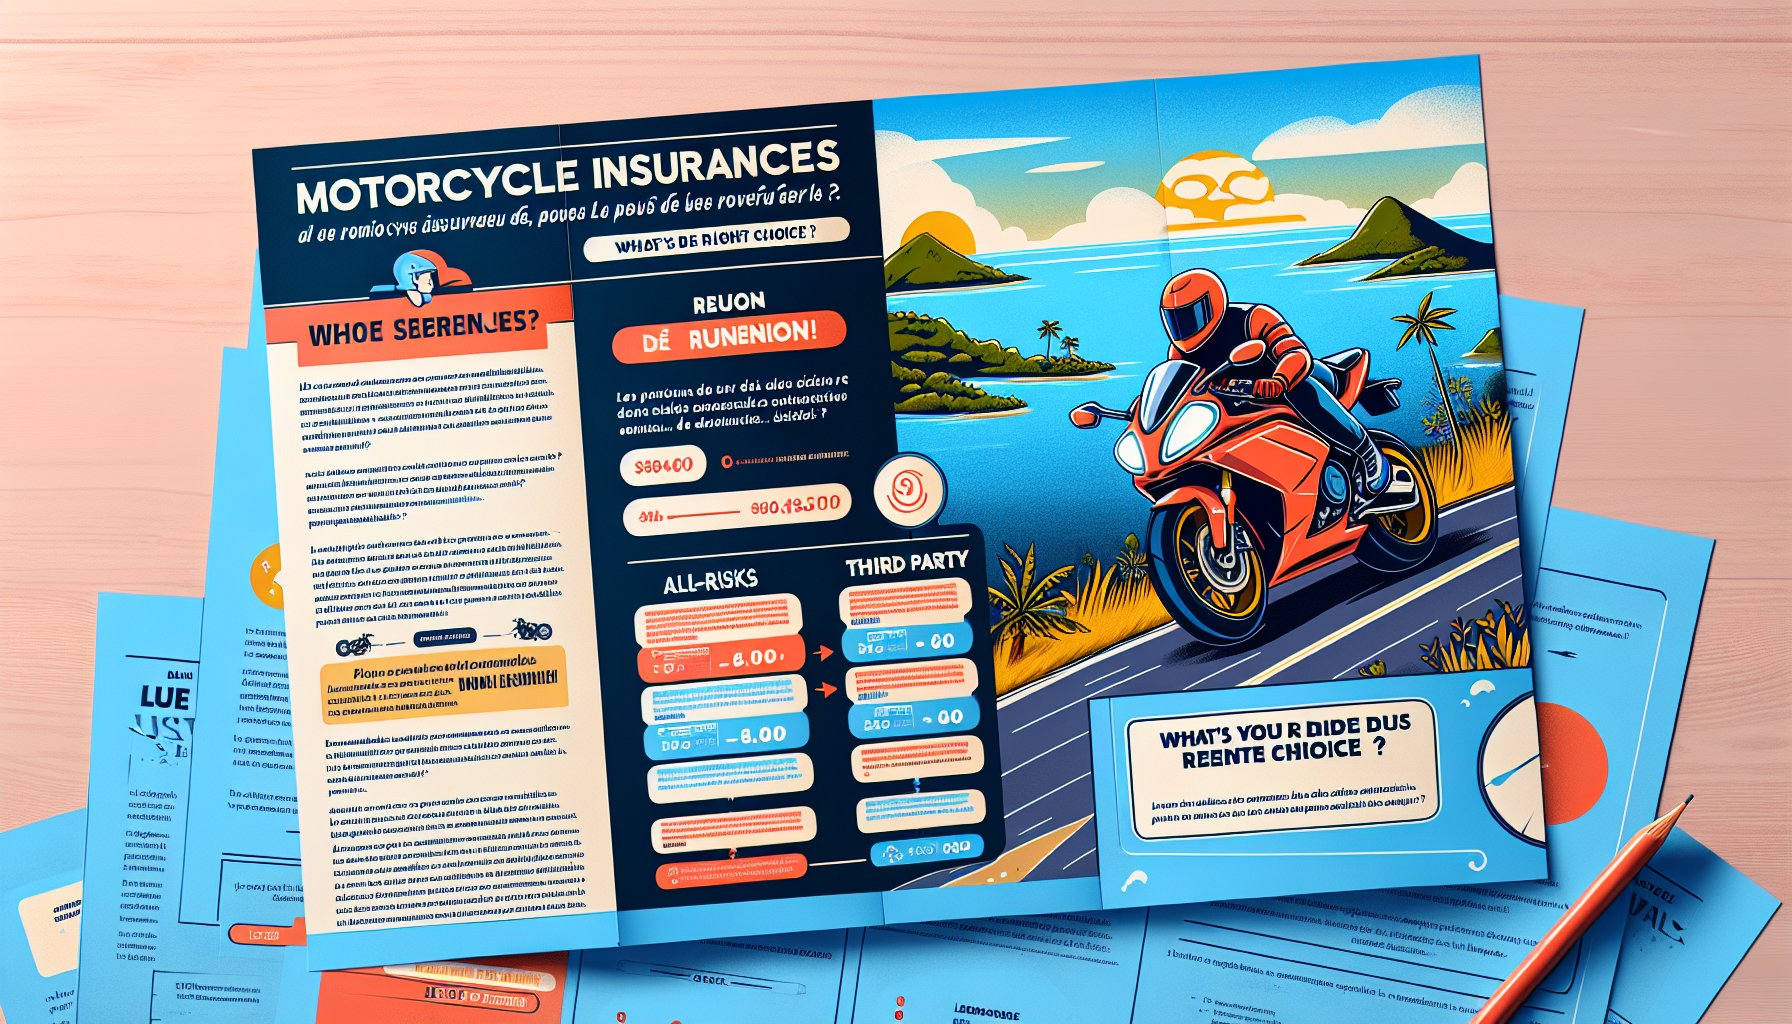 découvrez les différentes options d'assurance moto à la réunion : assurance tous risques, tiers ou au kilomètre, et trouvez la meilleure solution pour protéger votre moto.